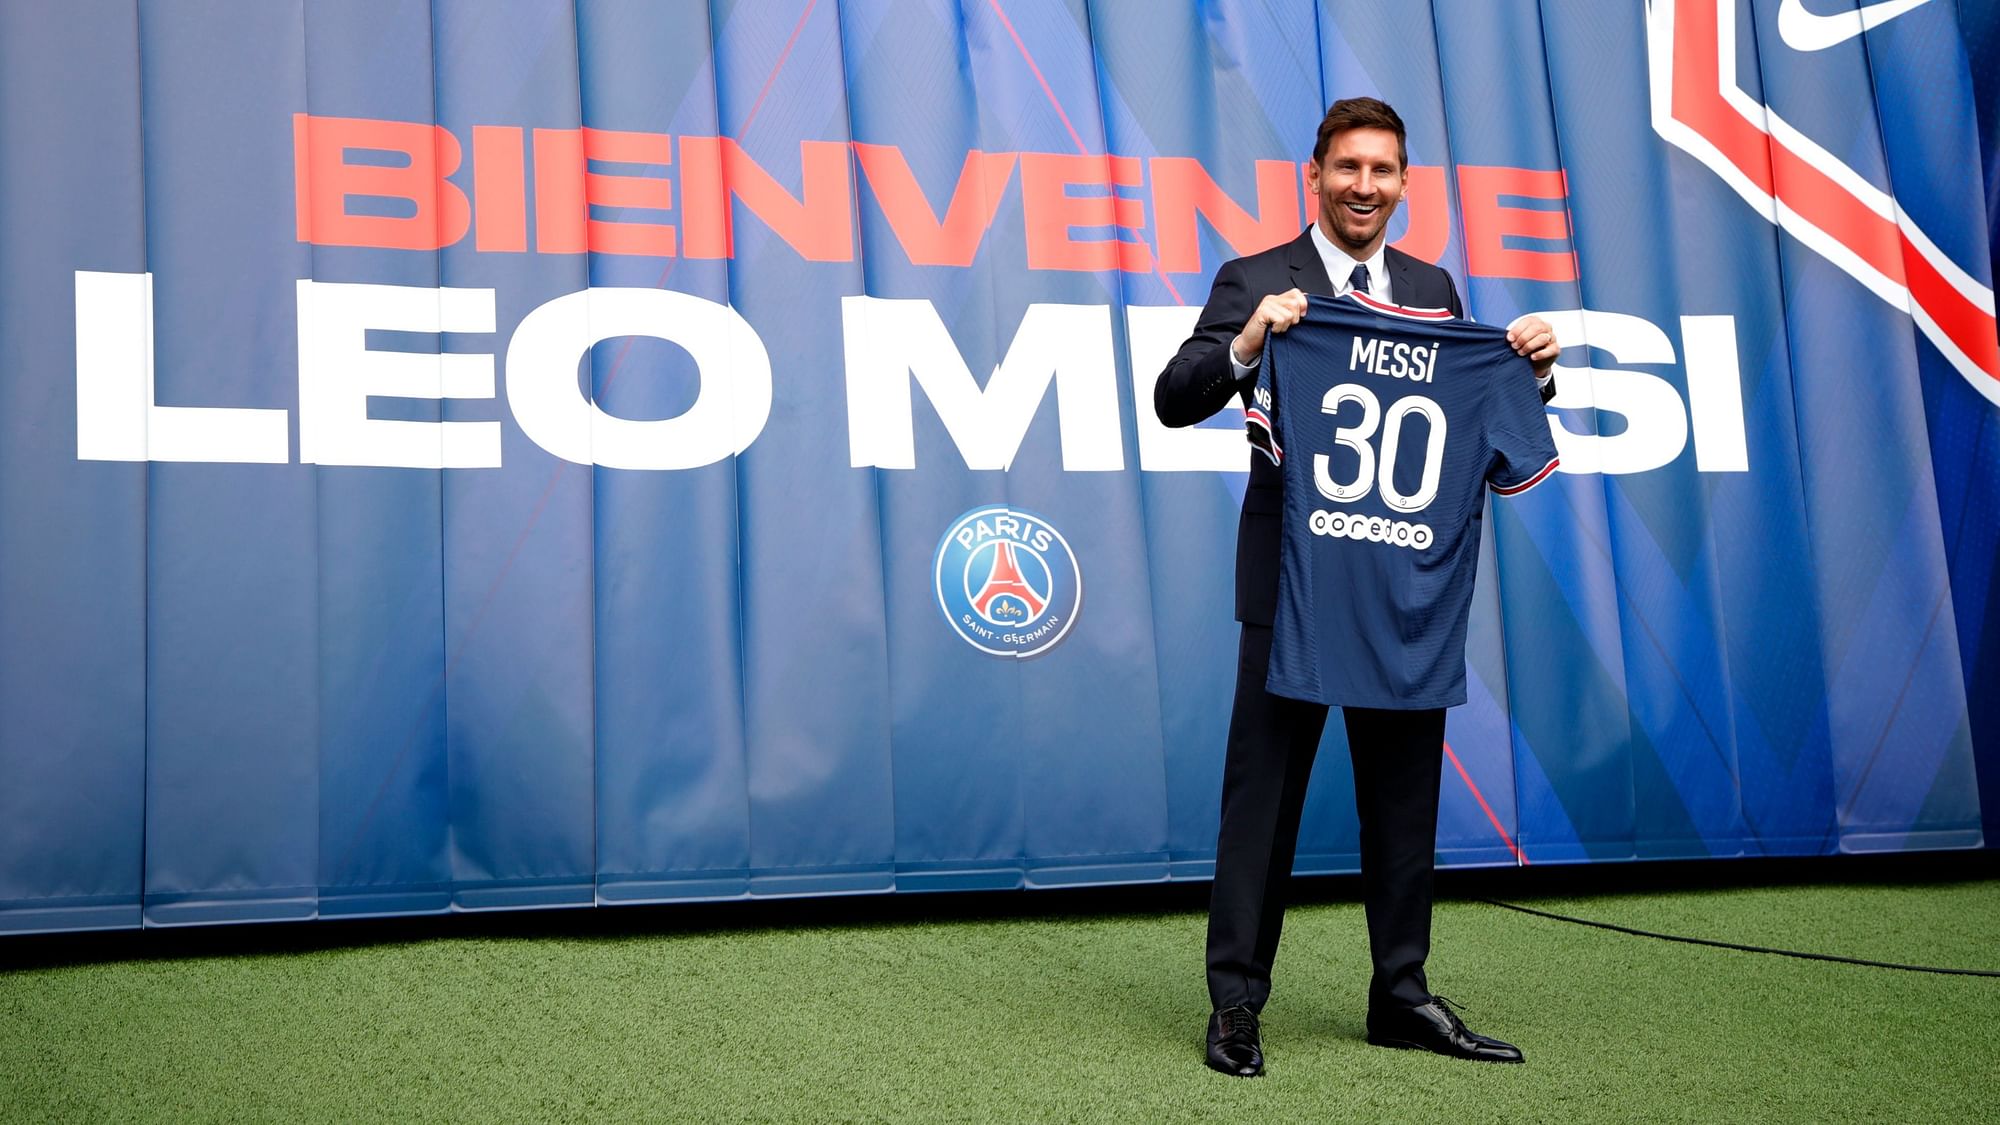 <div class="paragraphs"><p>Lionel Messi has joined Paris Saint-Germain for 2 years.</p></div>